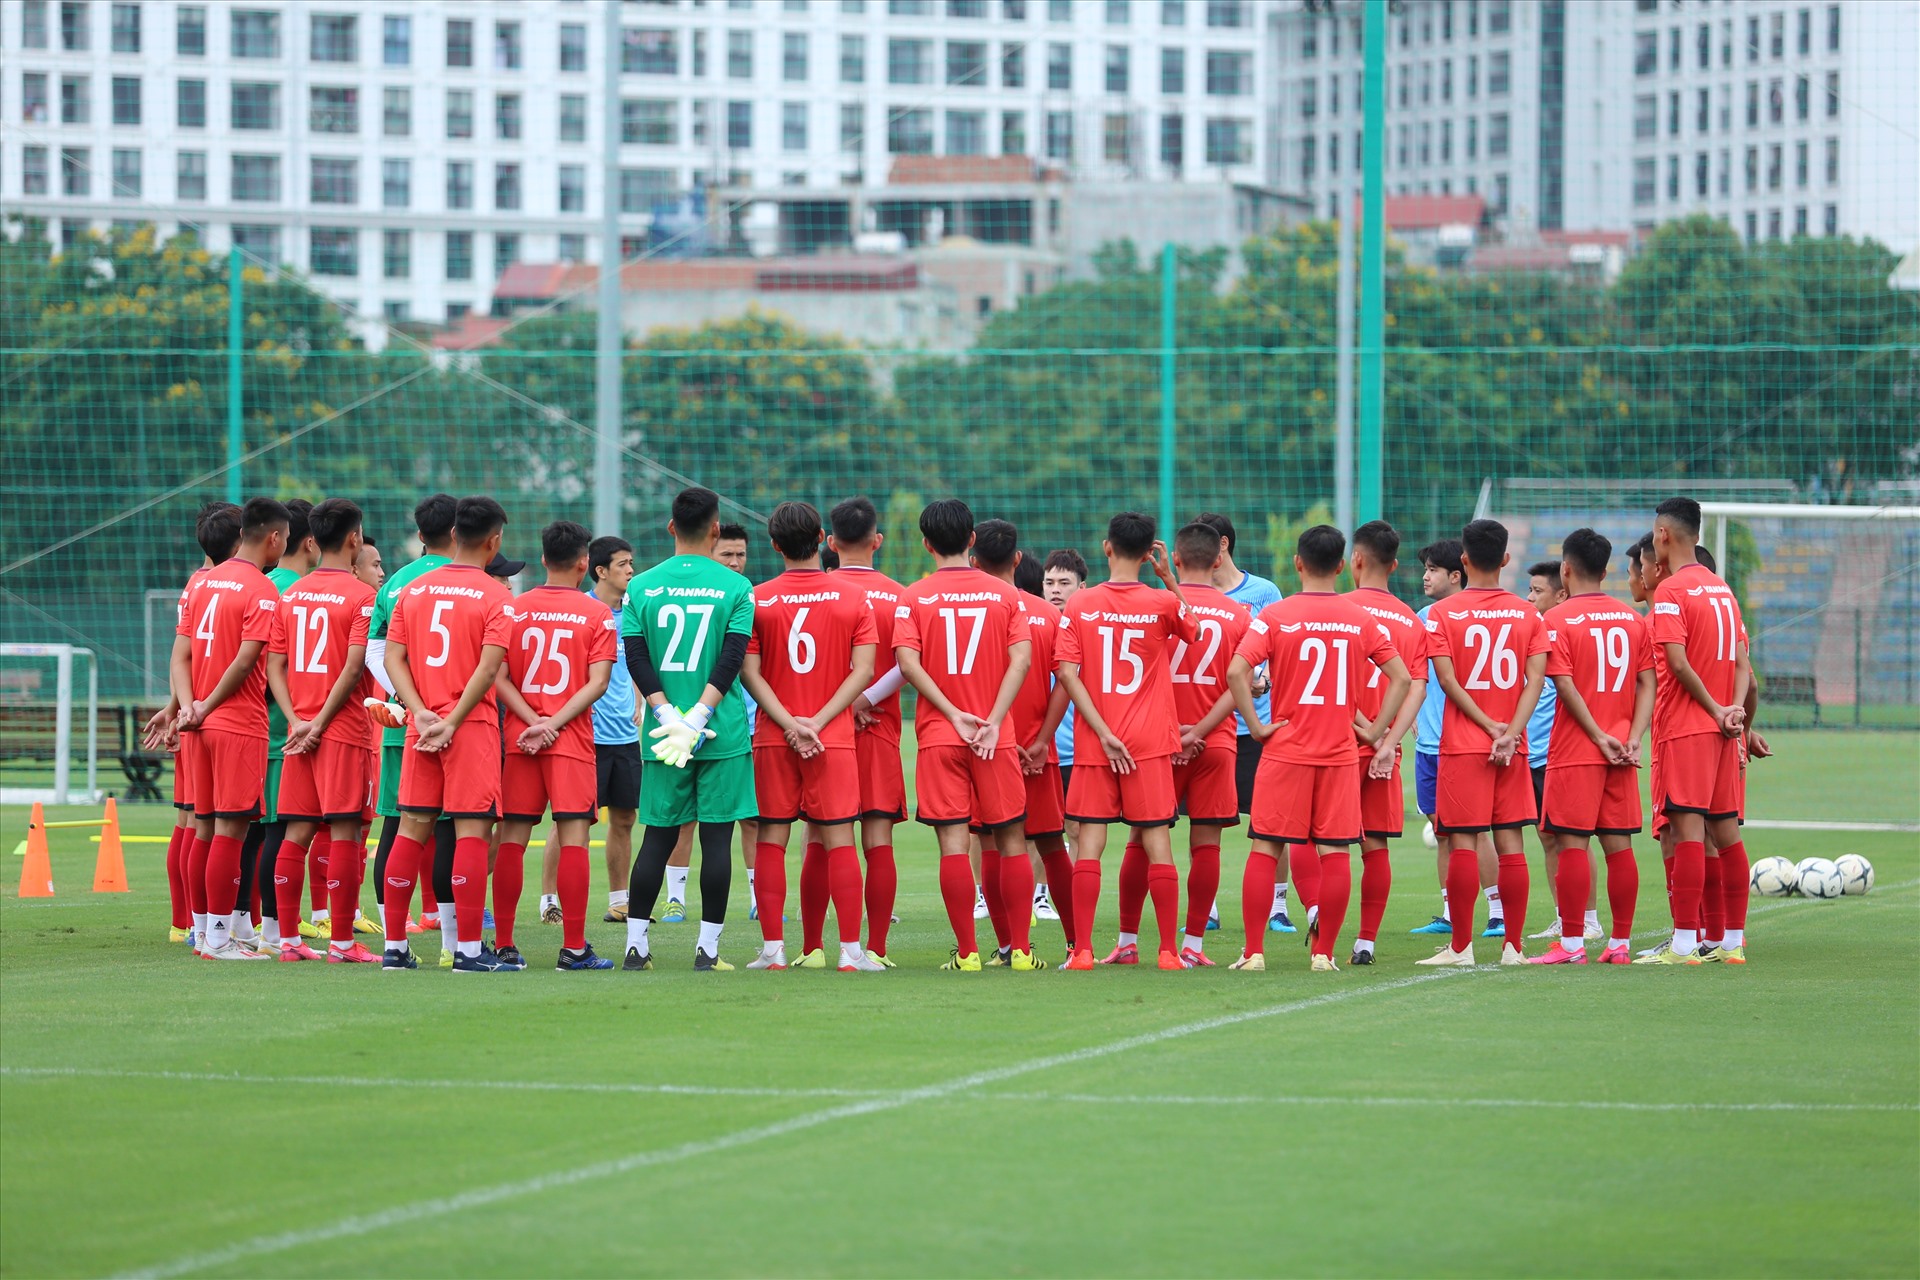 Đội tuyển U23 Việt Nam tập trung lần đầu chuẩn bị cho SEA Games 2021 với 28 cầu thủ. Đây đa số là các cầu thủ chưa có chỗ đứng tại câu lạc bộ và chưa được tạo điều kiện thi đấu nhiều tại V.League.